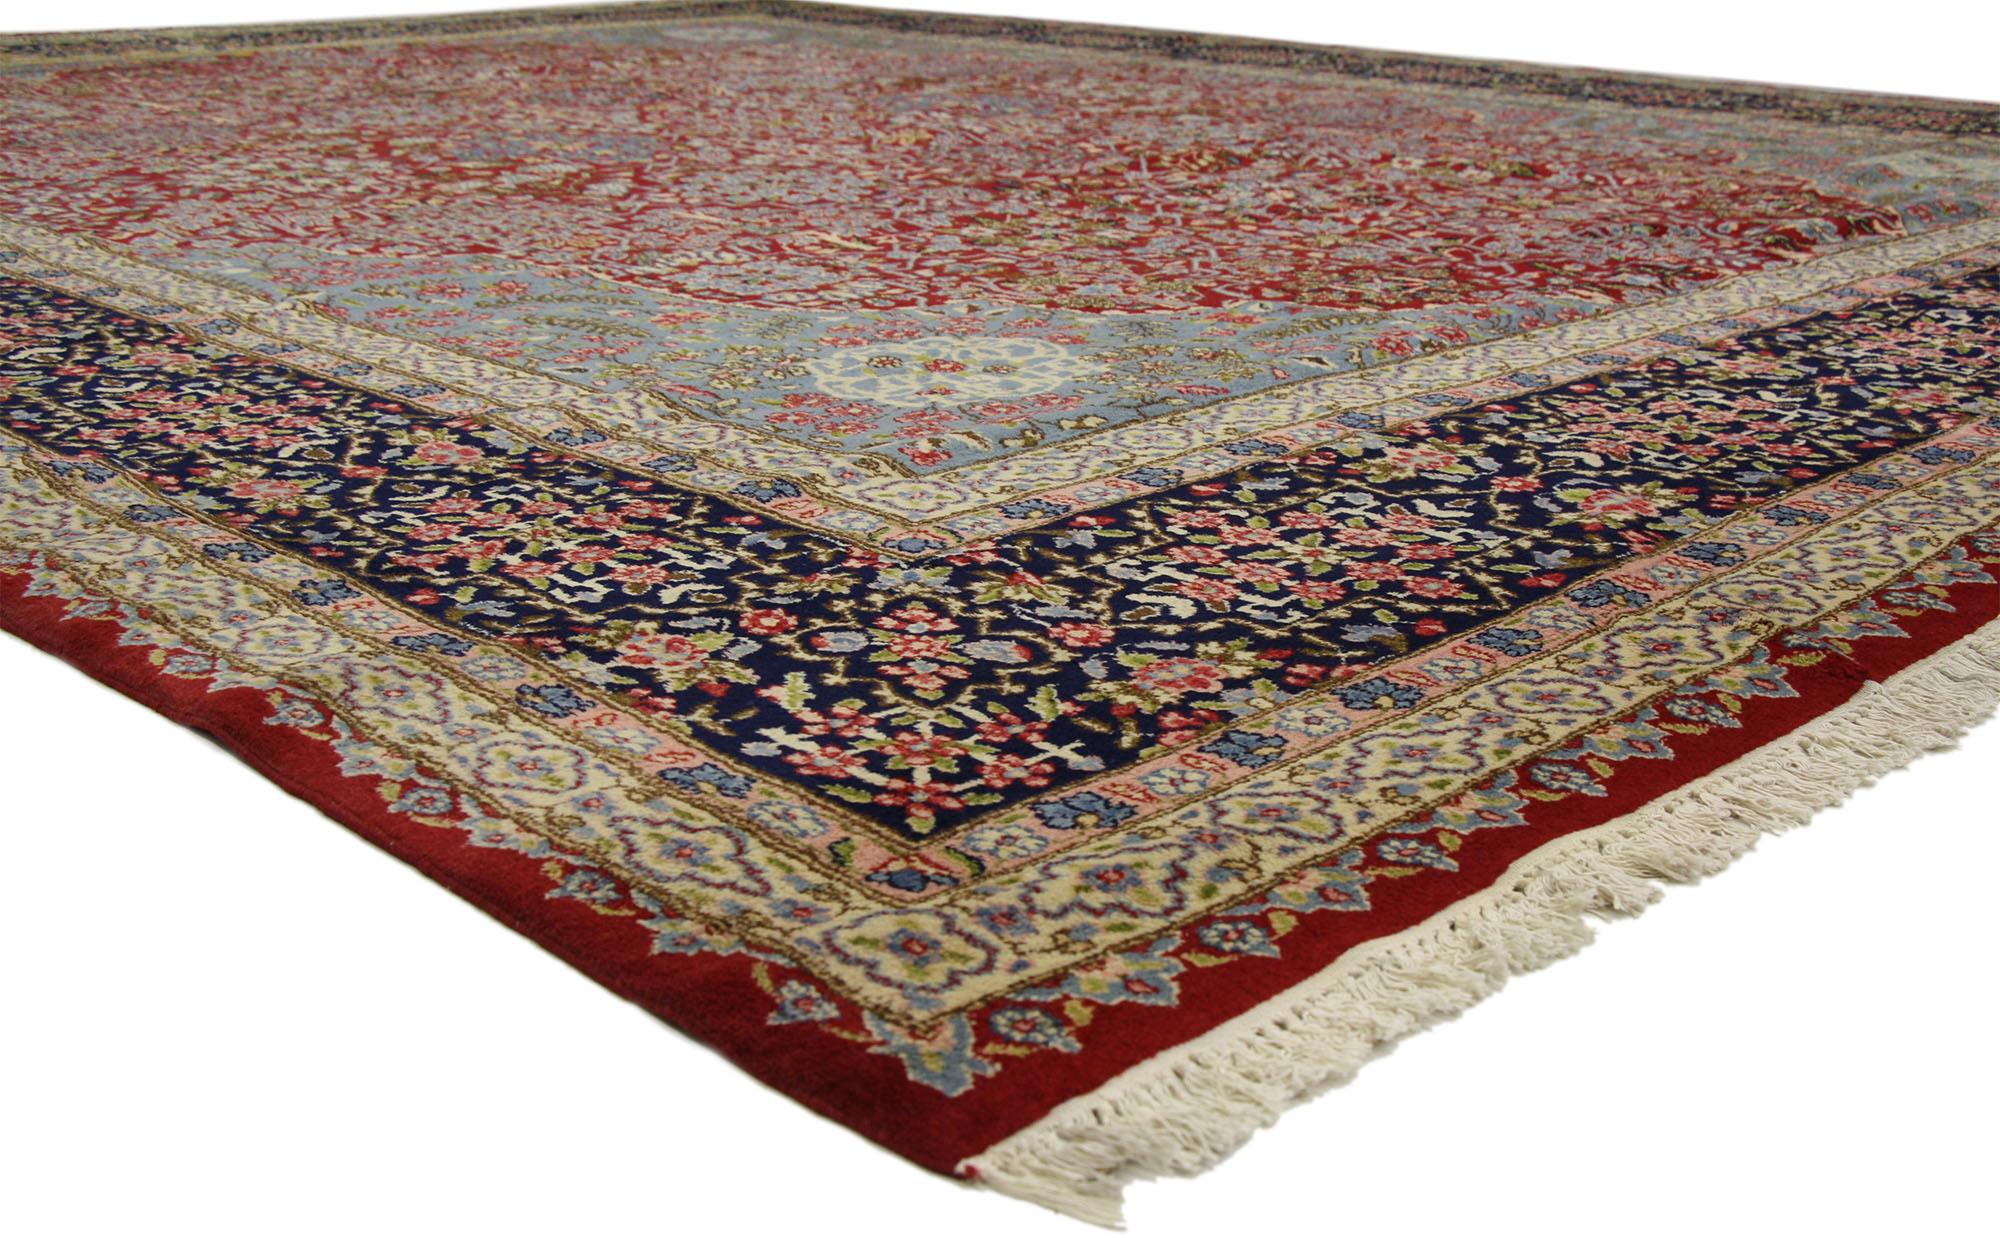 76443 tapis Persan Kerman vintage avec style Manor anglais traditionnel. Avec son motif floral intemporel et son attrait saisissant, ce tapis Persan Kerman vintage en laine nouée à la main charme avec aisance et incarne à merveille le style Manor